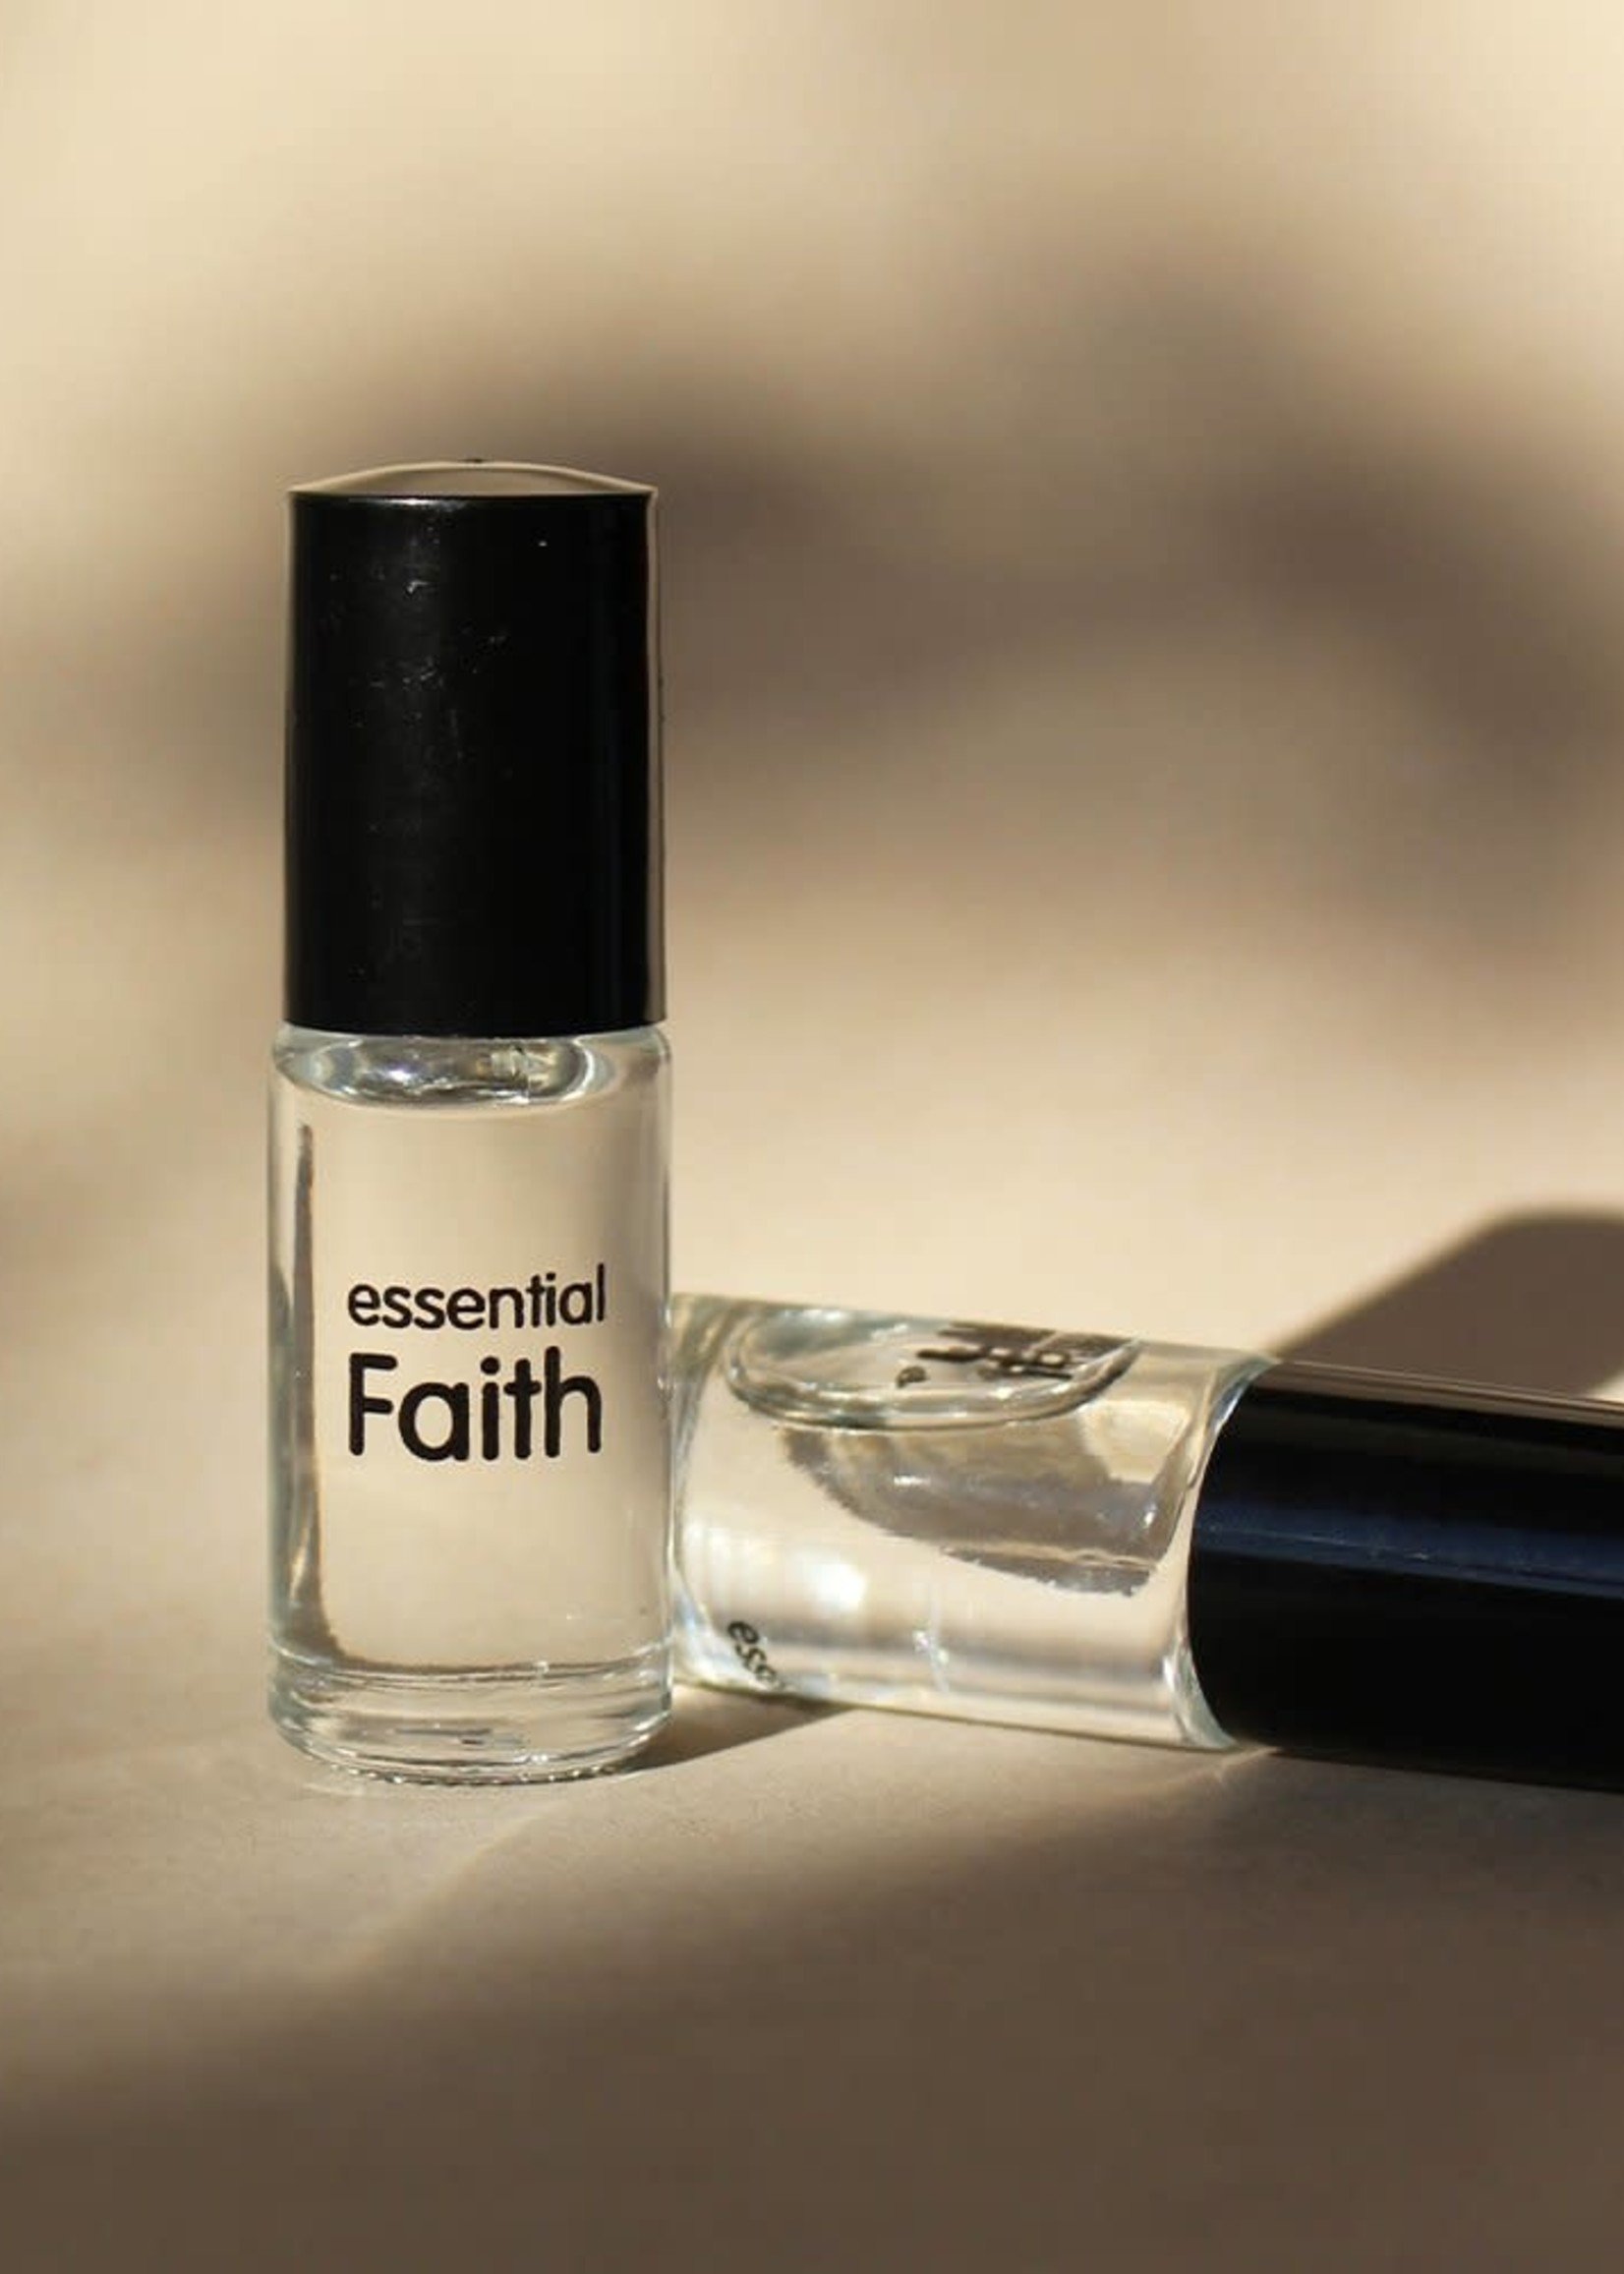 Essential Faith Original Perfume Oil